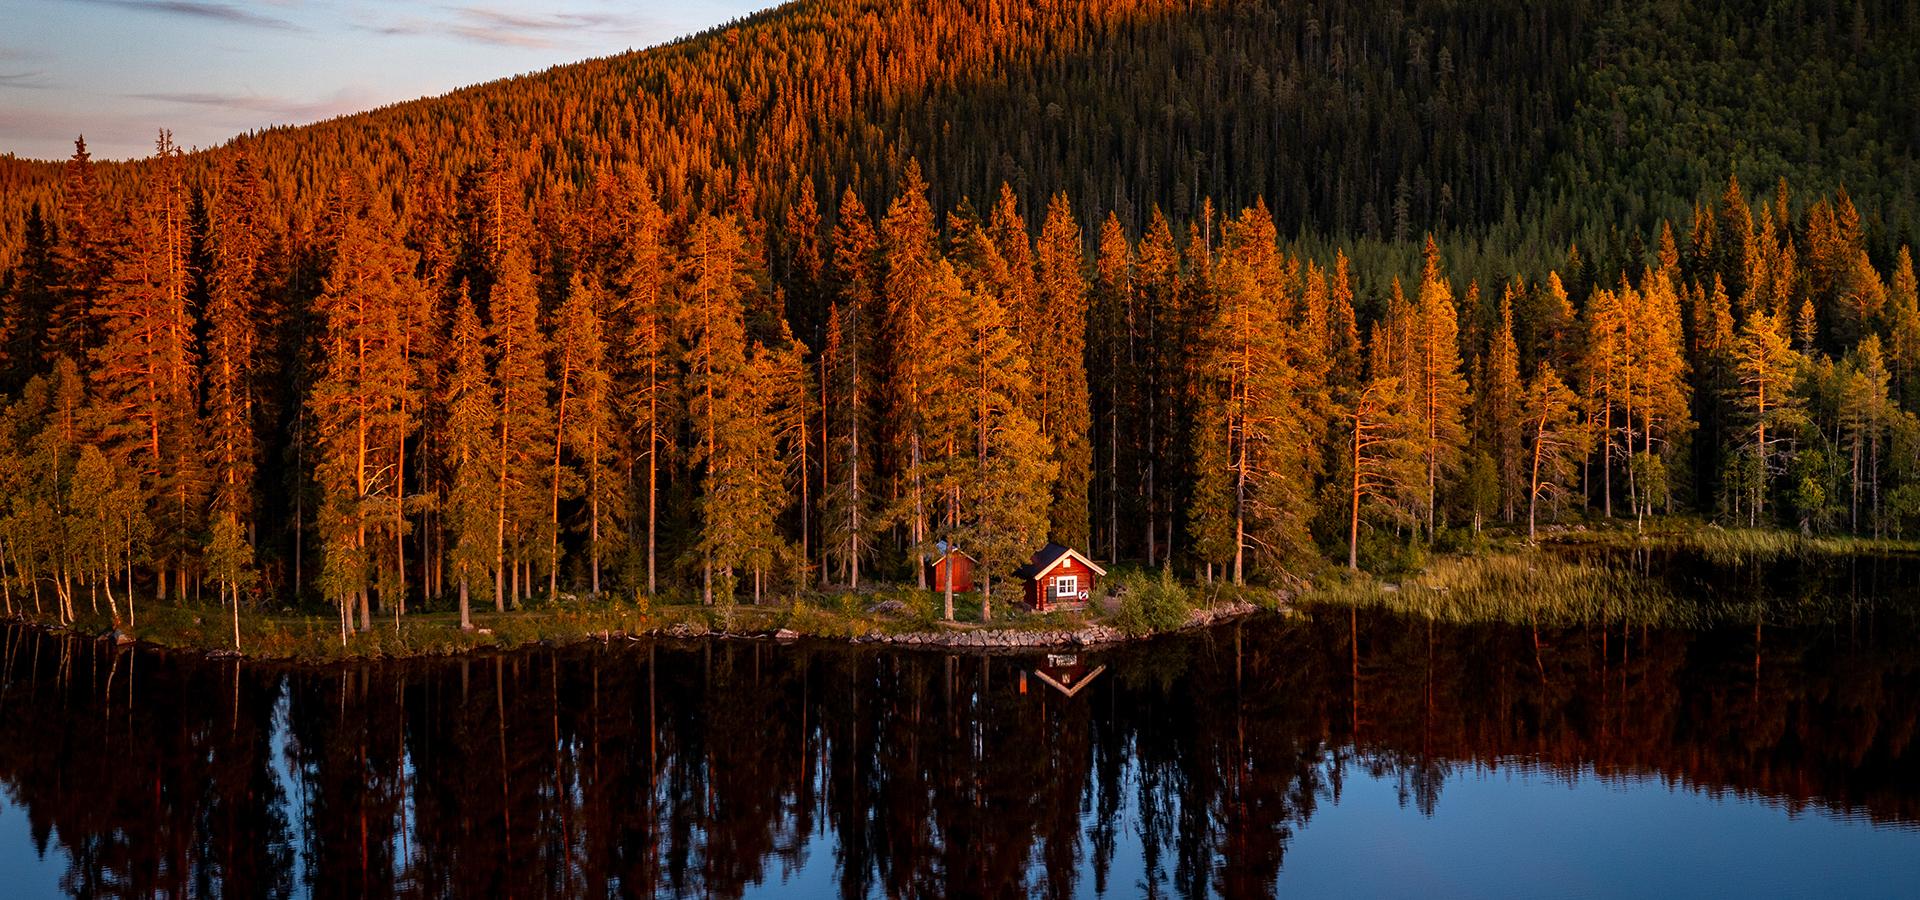 En liten röd stuga vid kanten av en sjö med djup skog bakom.